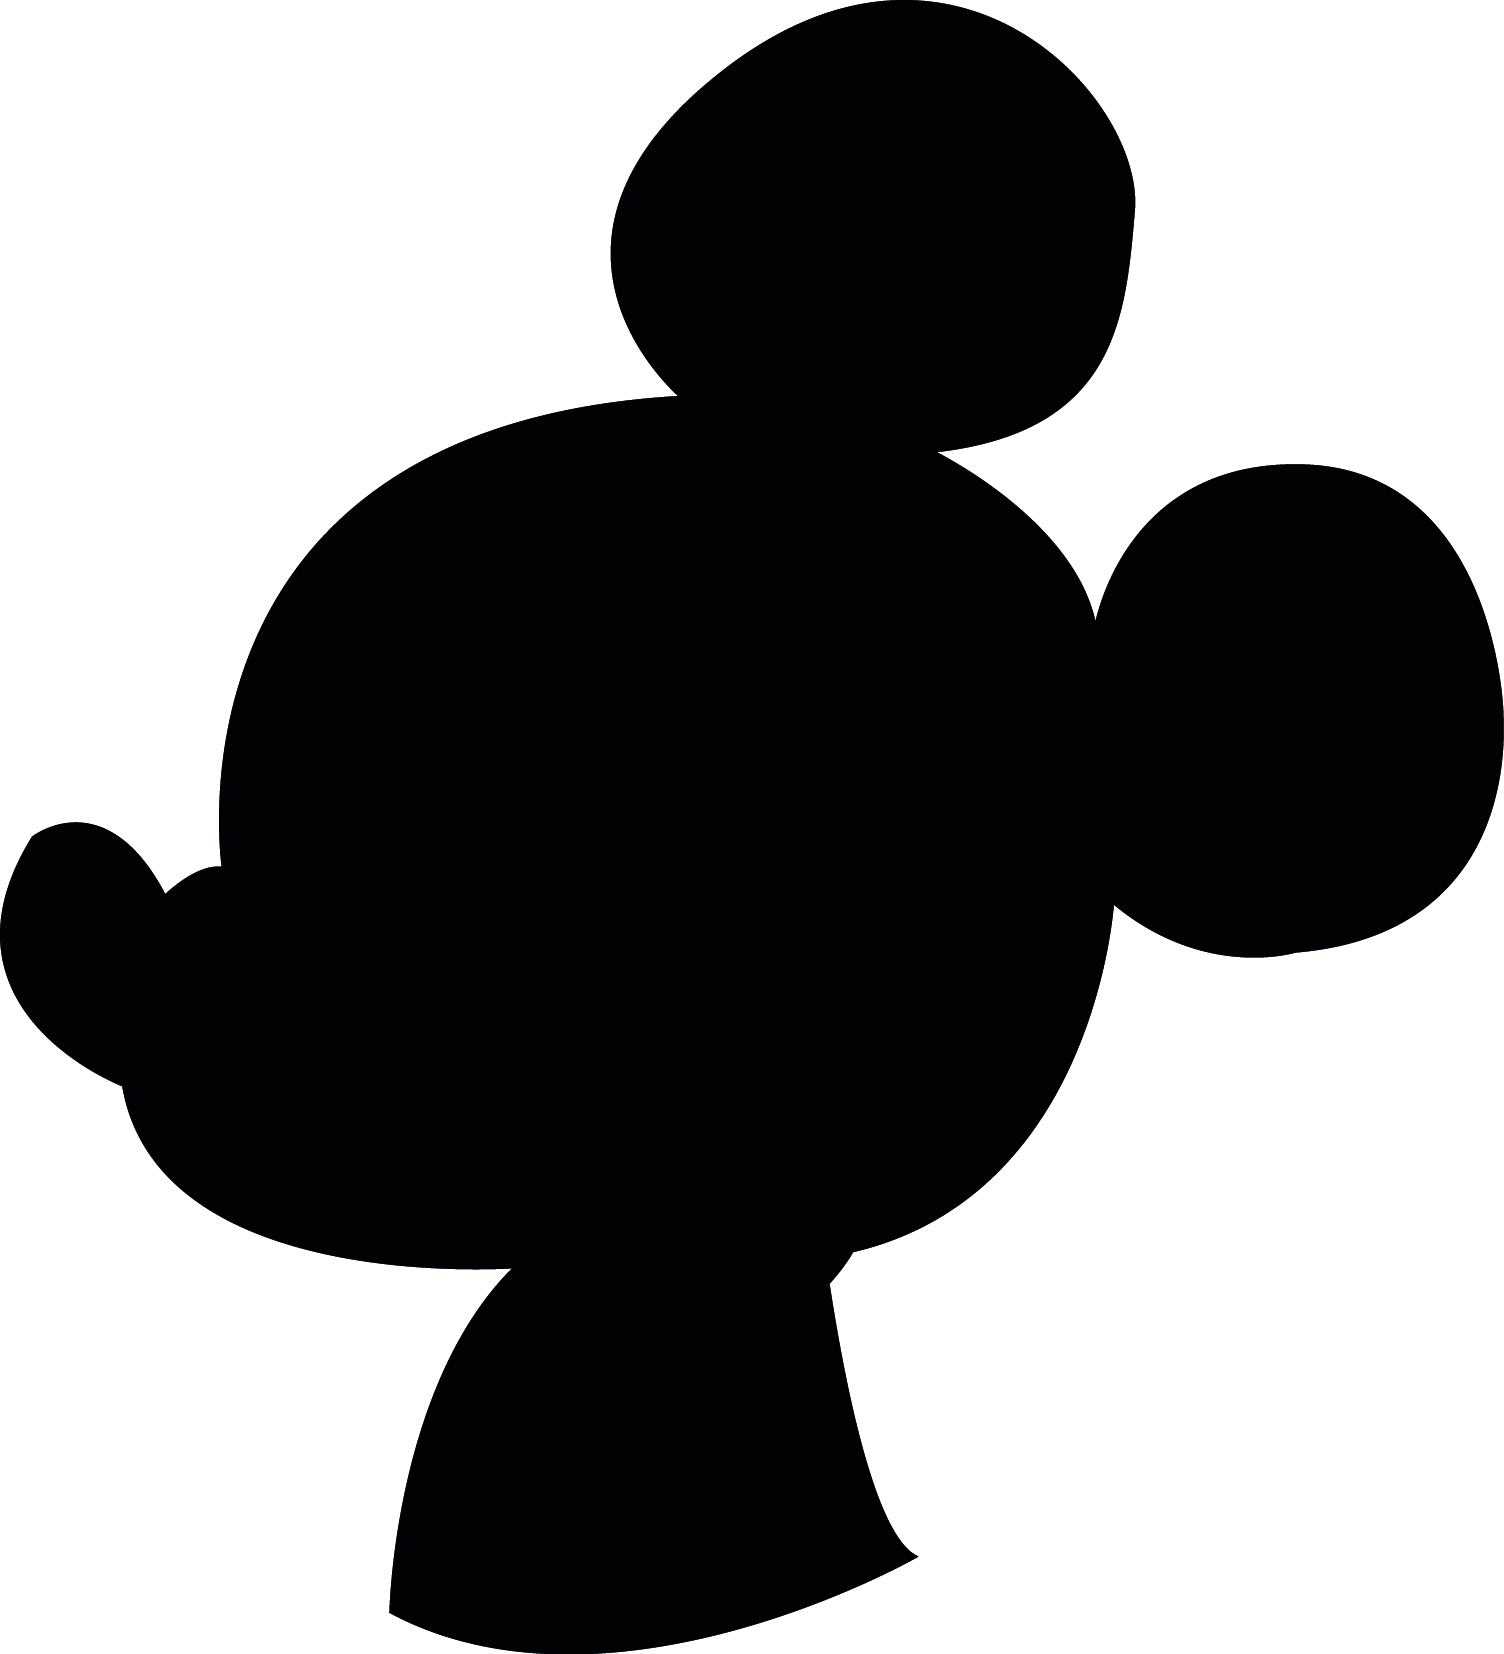 Mickey Mouse Silhouette Clip Art - Tumundografico